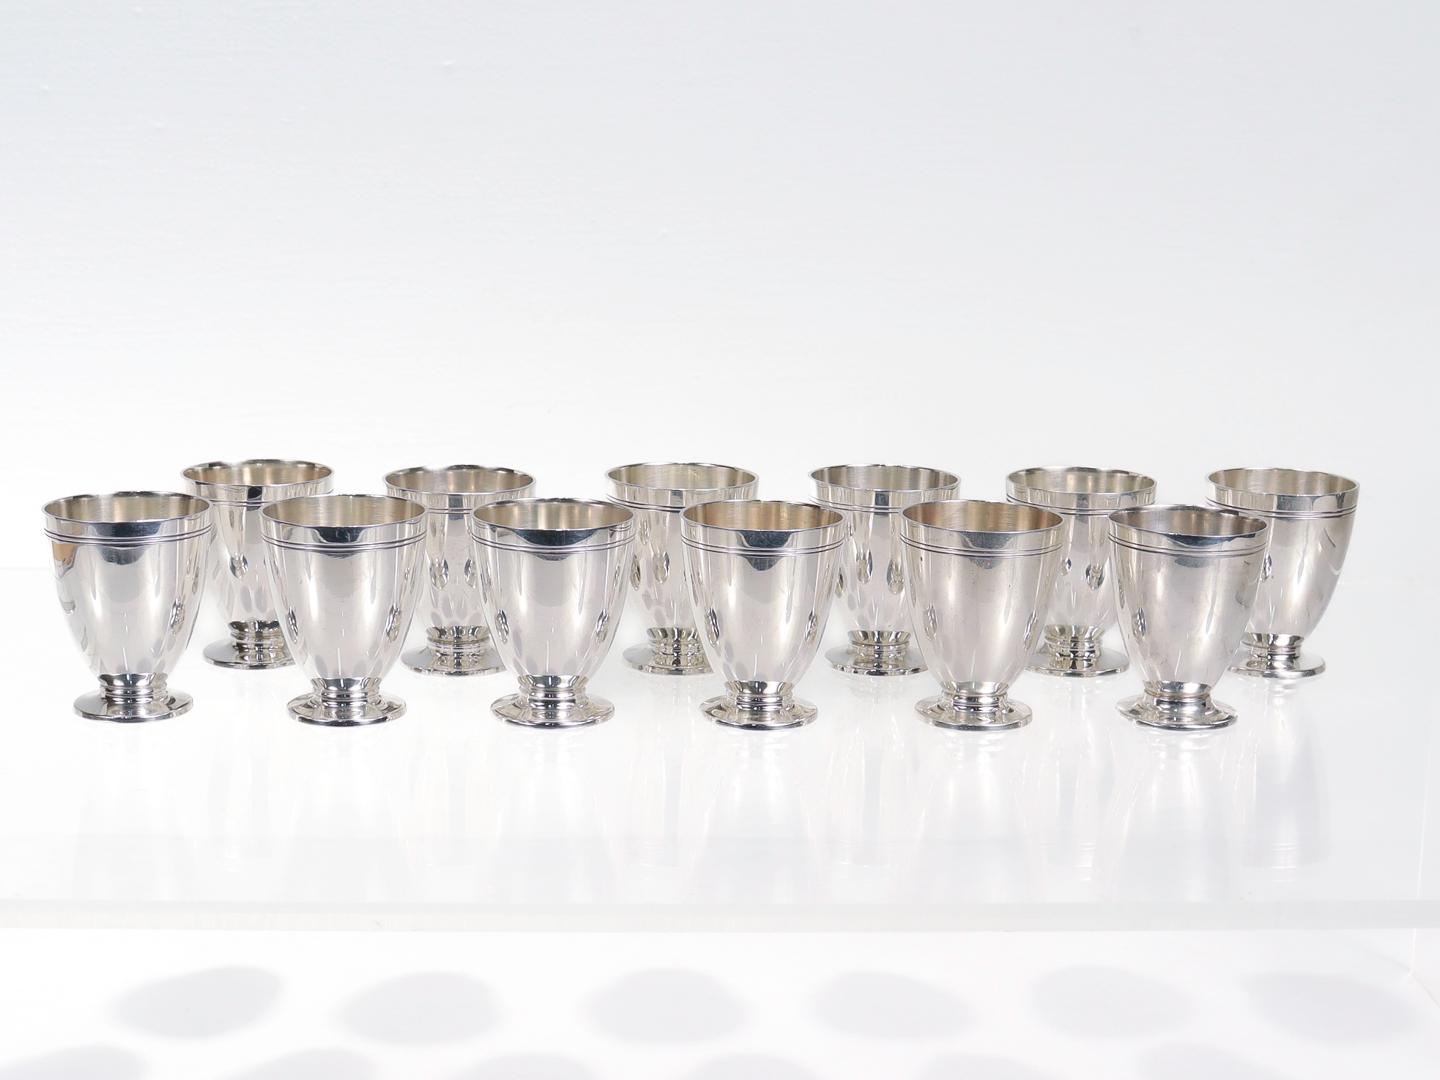 Un bel ensemble de 12 verres à liqueur ou à shot en argent.

Par Tiffany & Co.

En argent sterling.

Chaque gobelet est doté d'un design épuré remarquable comprenant un pied plongeur, un corps effilé et une décoration audacieuse à double ligne